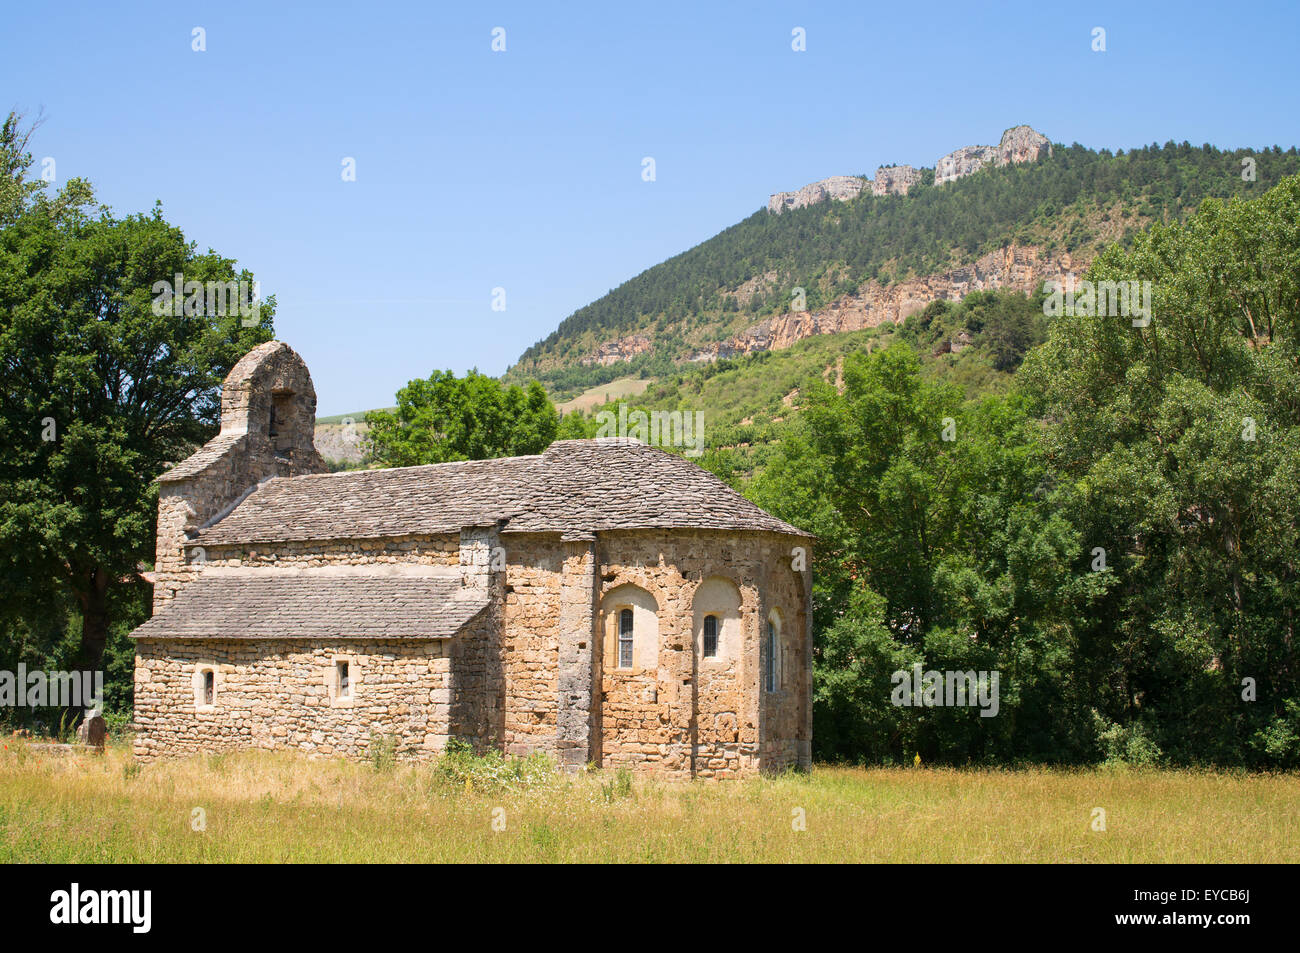 10e siècle église ou Église de Saint-Martin de Pinet, PInet, l'Aveyron, Midi-Pyrénées, France, Europe Banque D'Images